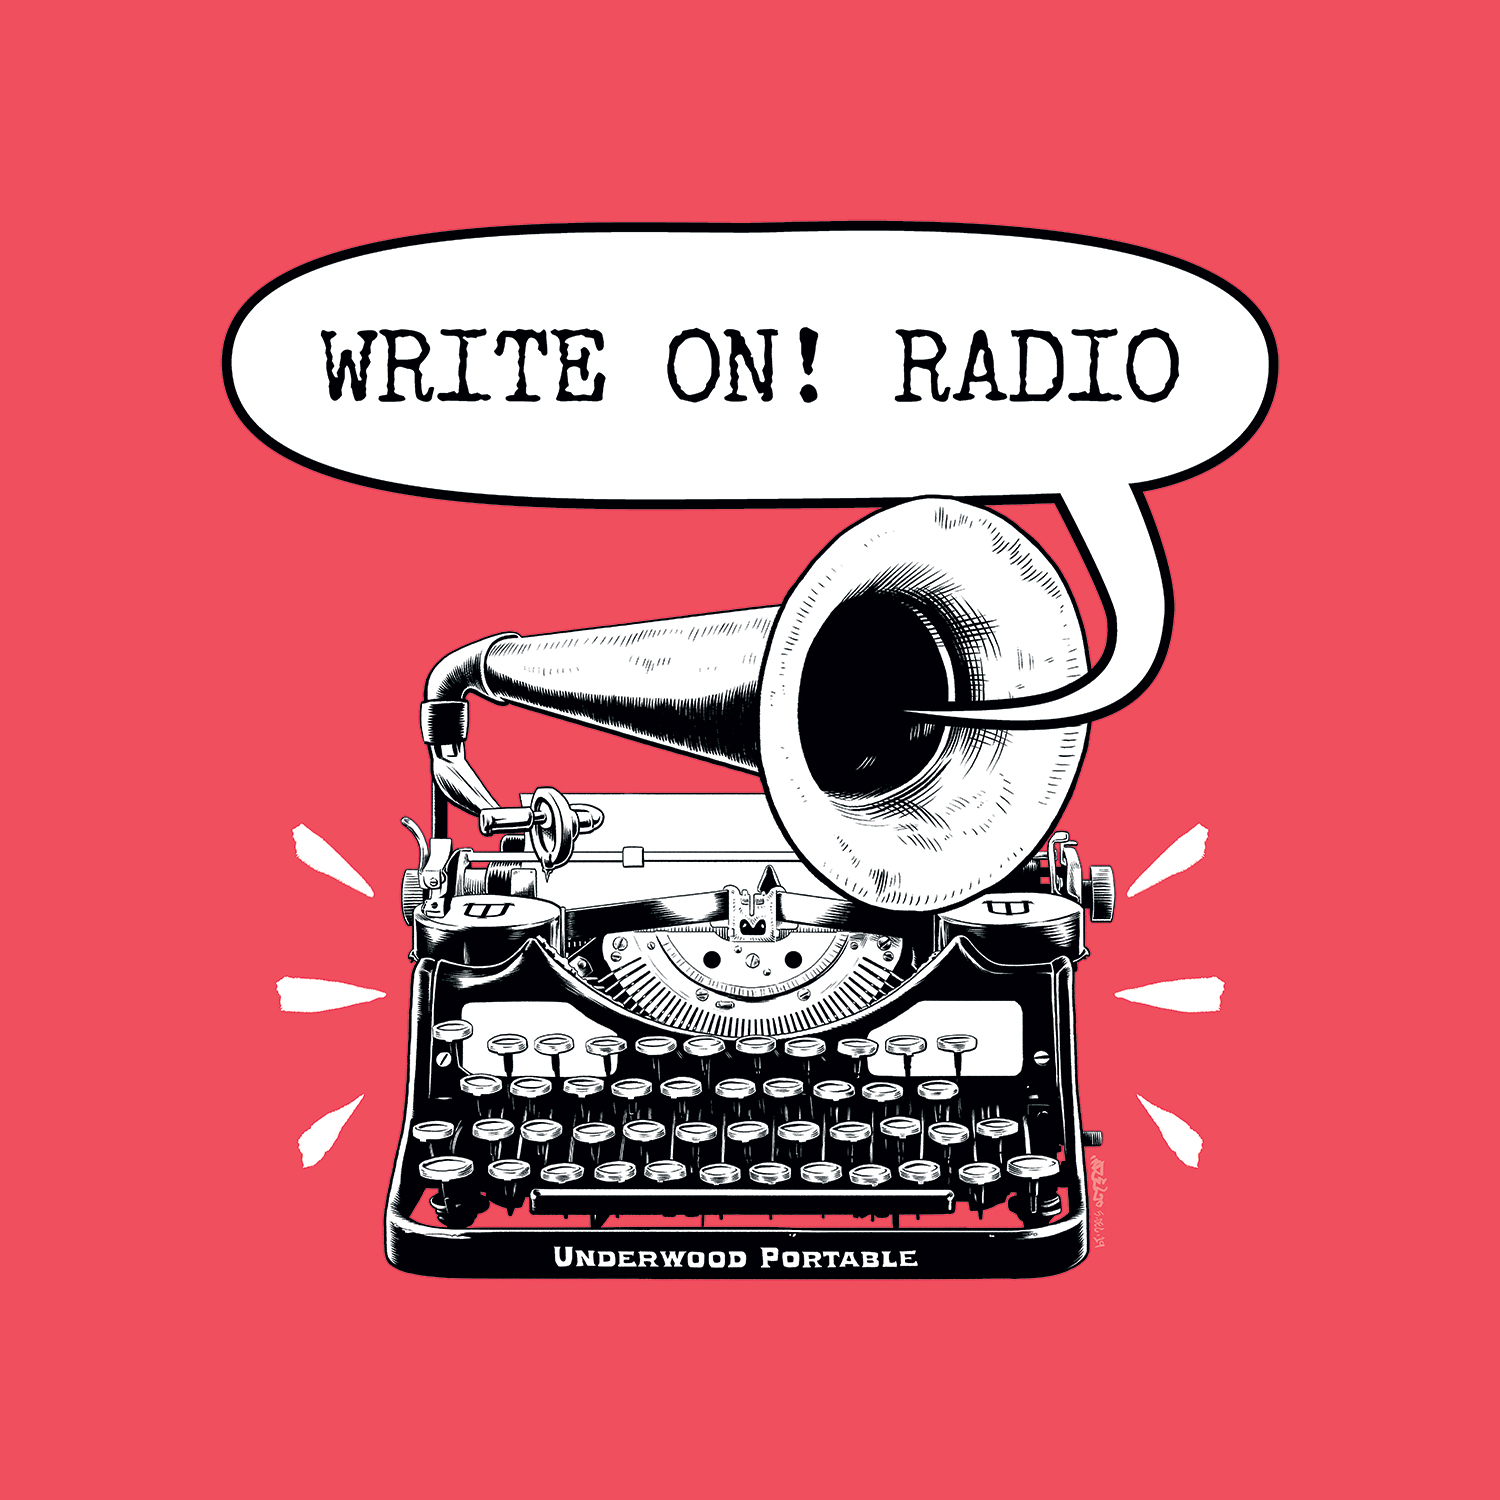 Write On! Radio - Queen of Swords Press